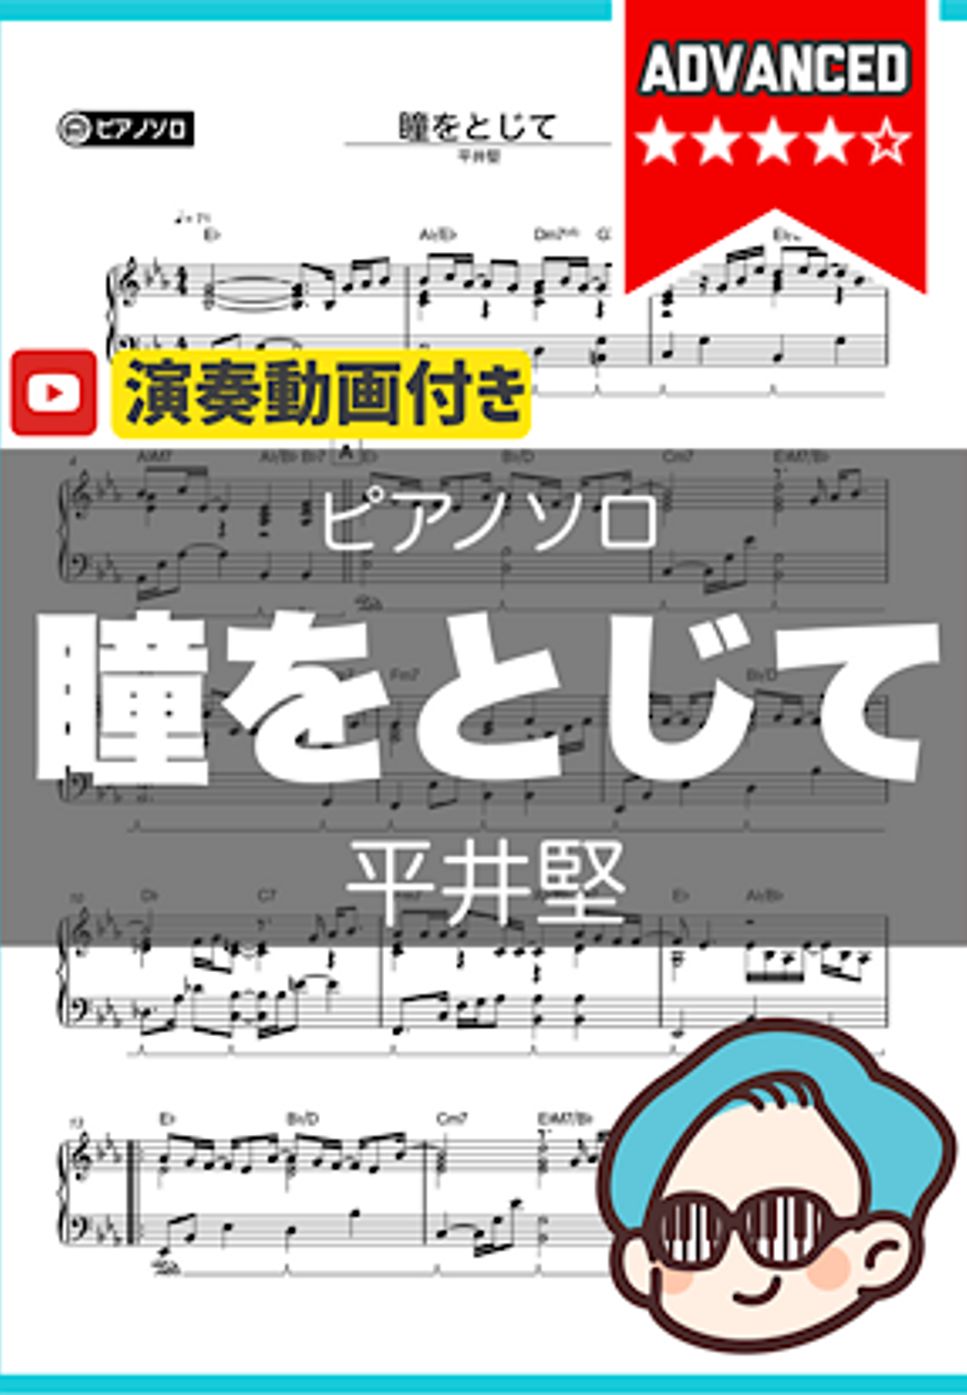 平井堅 - 瞳をとじて by シータピアノ